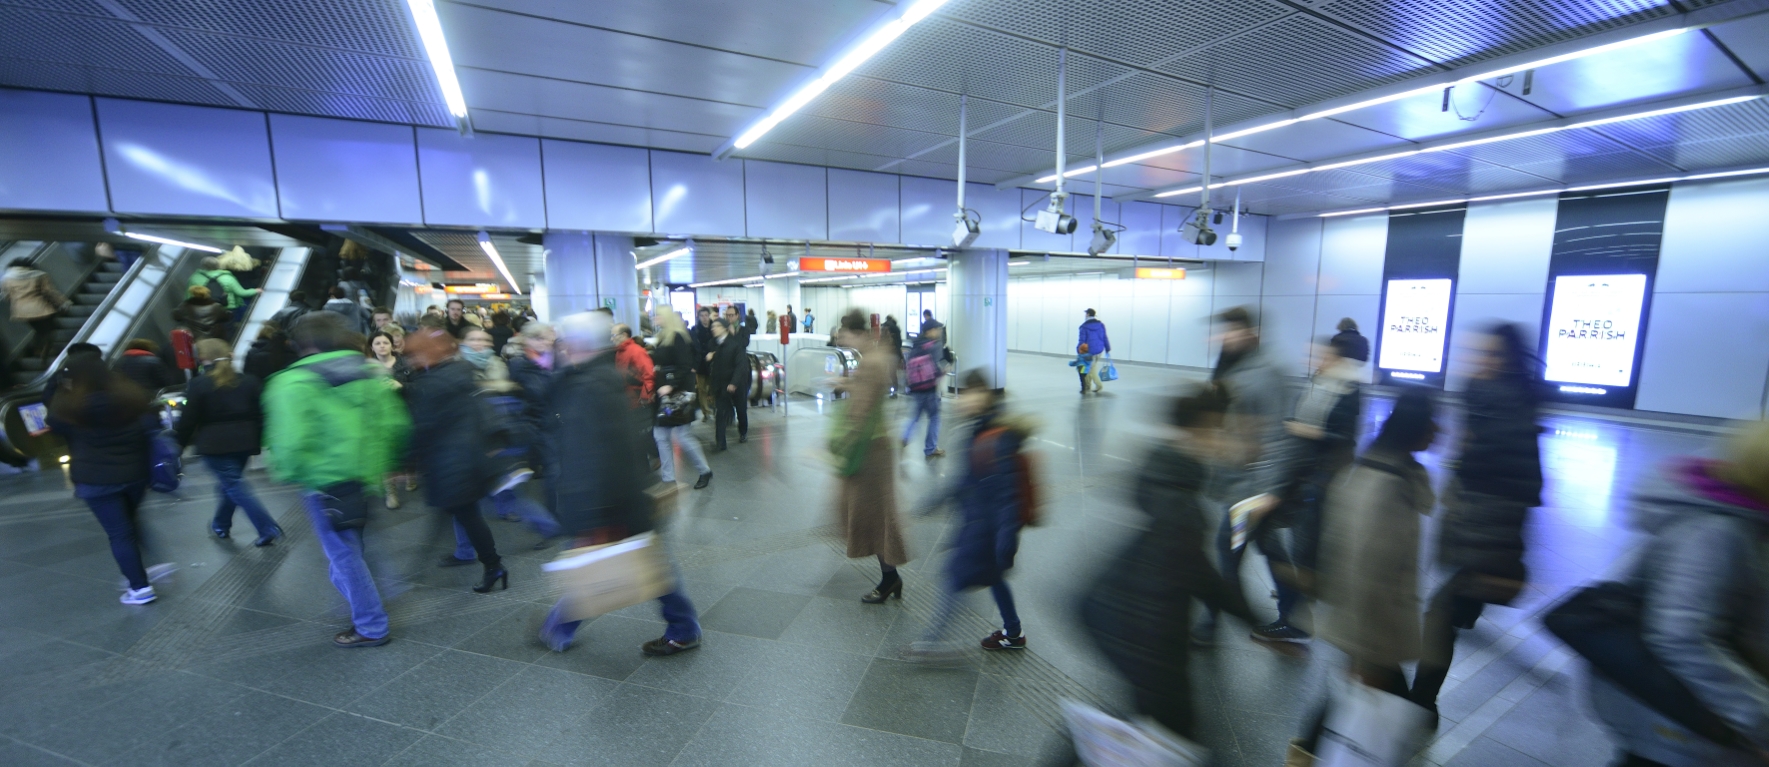 Viele Tausend Fahrgäste nutzen täglich die Wiener Linien, in diesem Bild die U-Bahn der Station Stephansplatz.